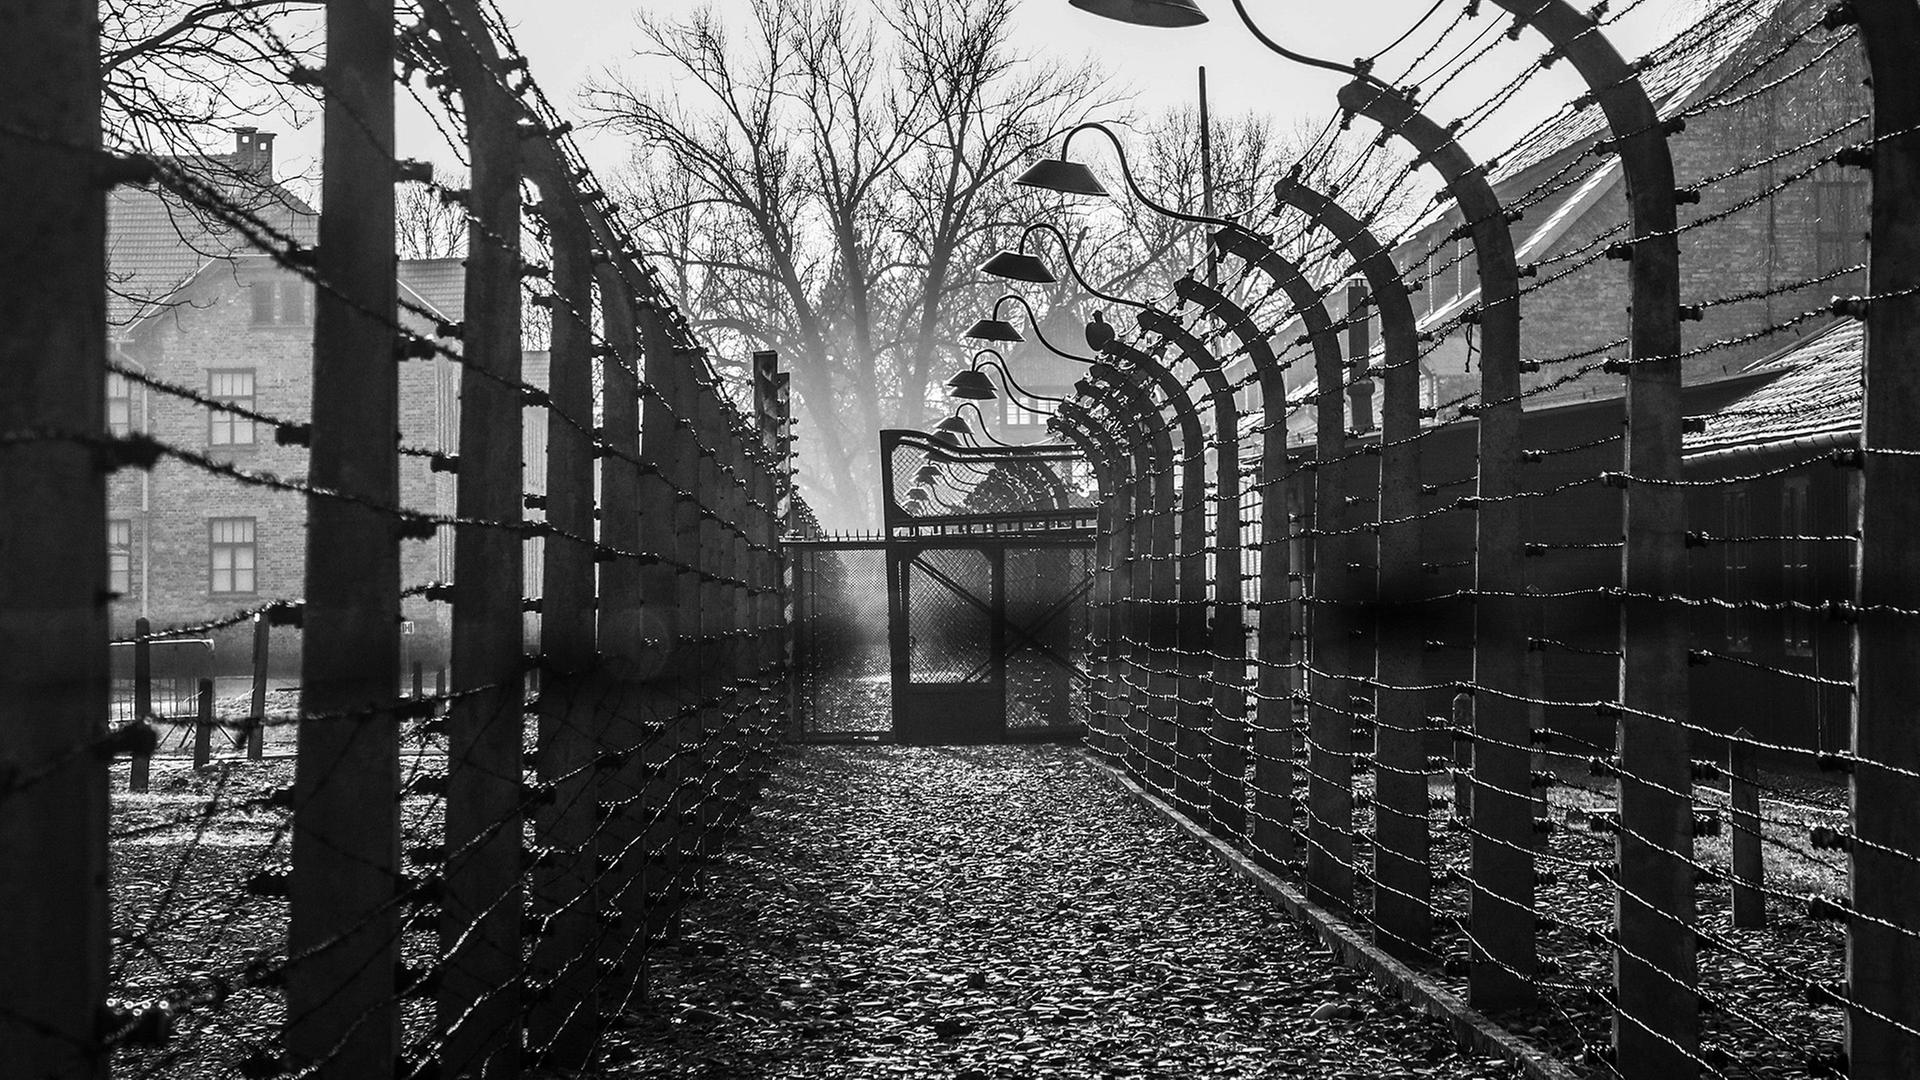 Stacheldrahtzaun in Auschwitz